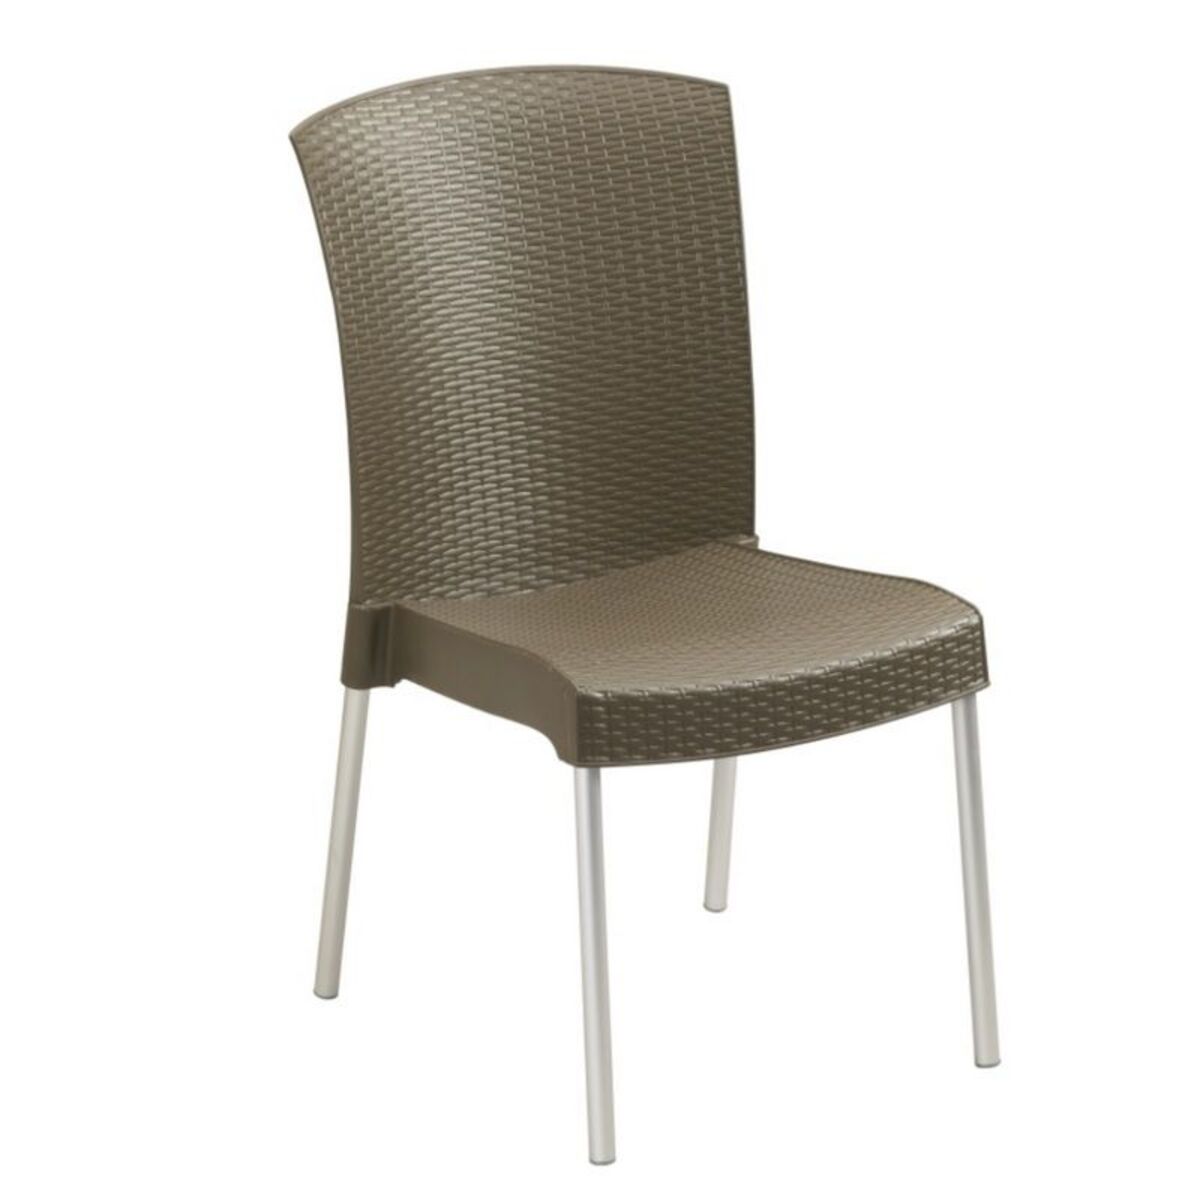 Chaise coloris bronze pieds en aluminium grosfillex - par 16